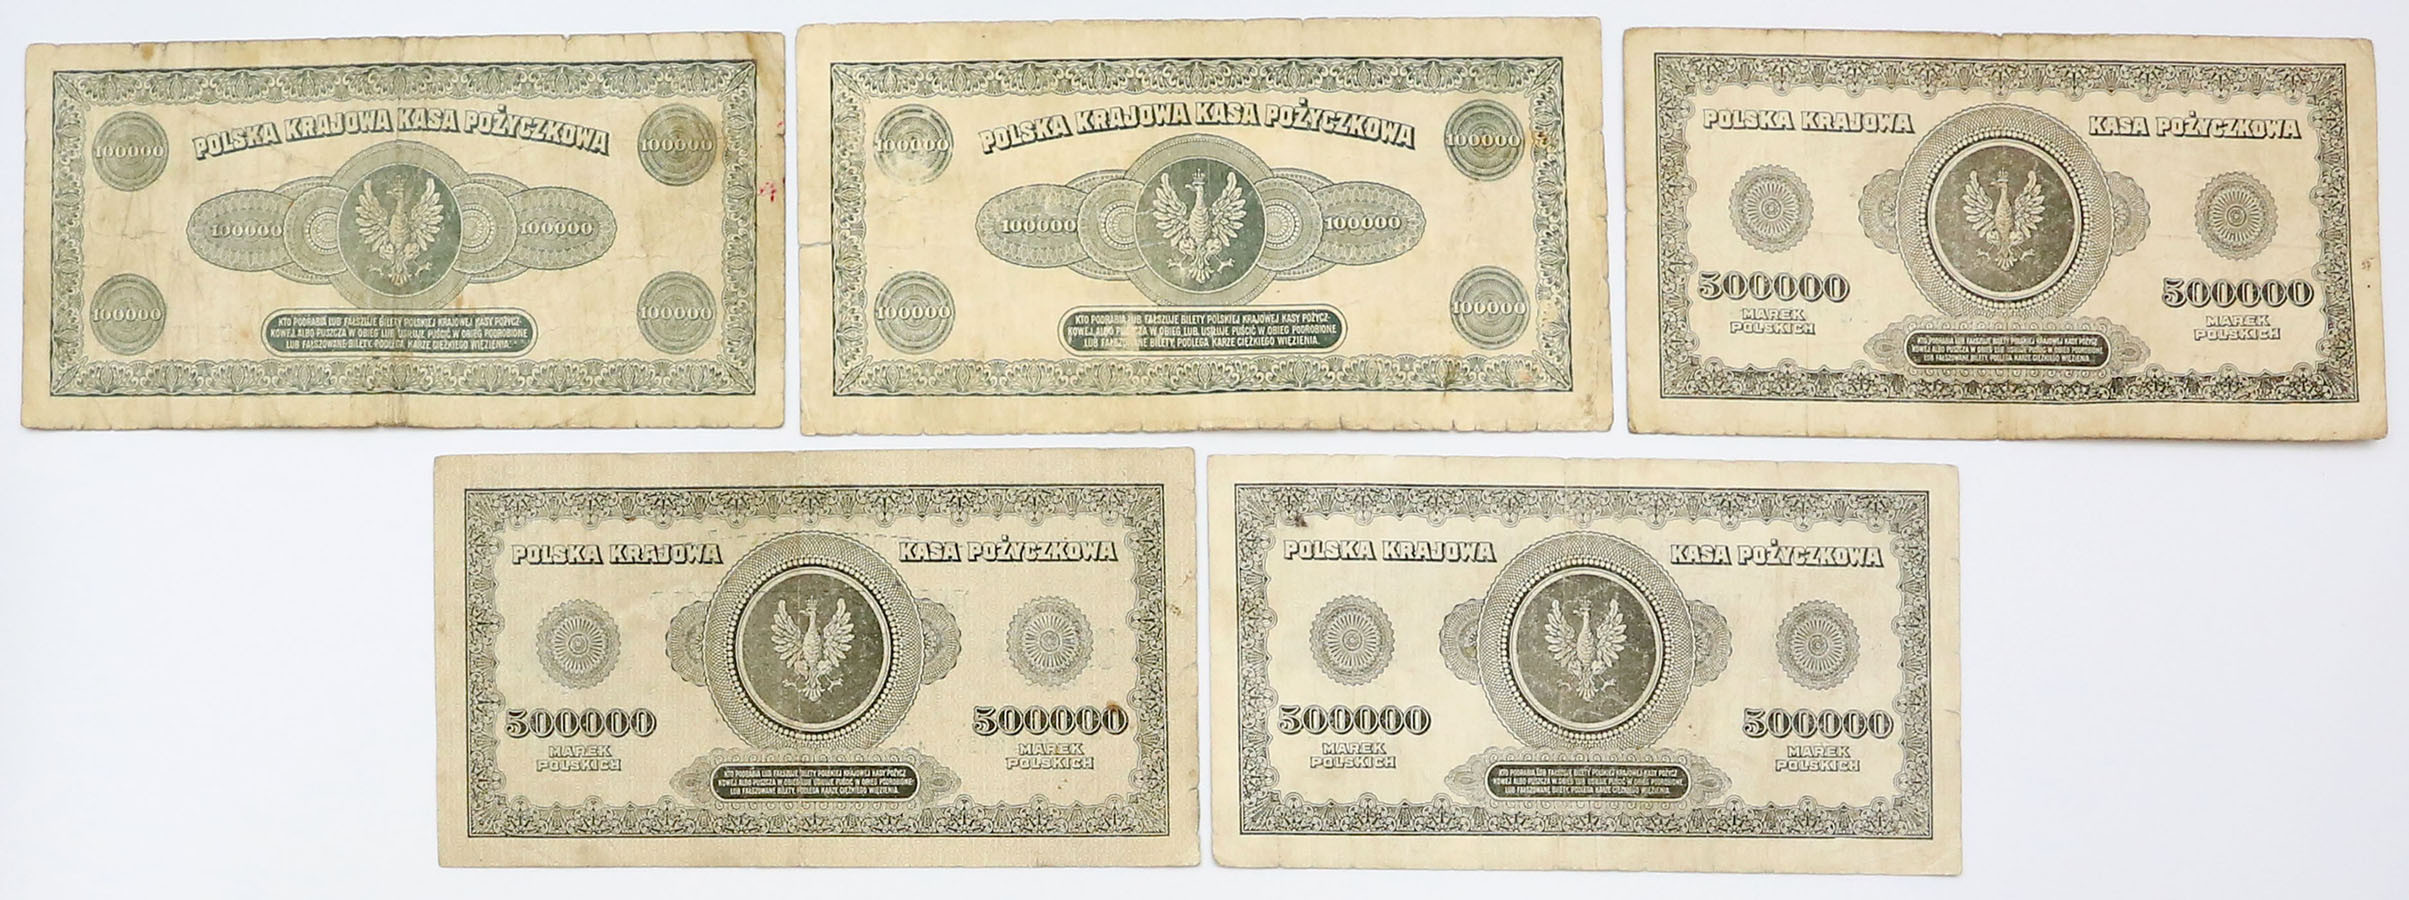 100.000-500.000 marek polskich 1923, zestaw 5 banknotów